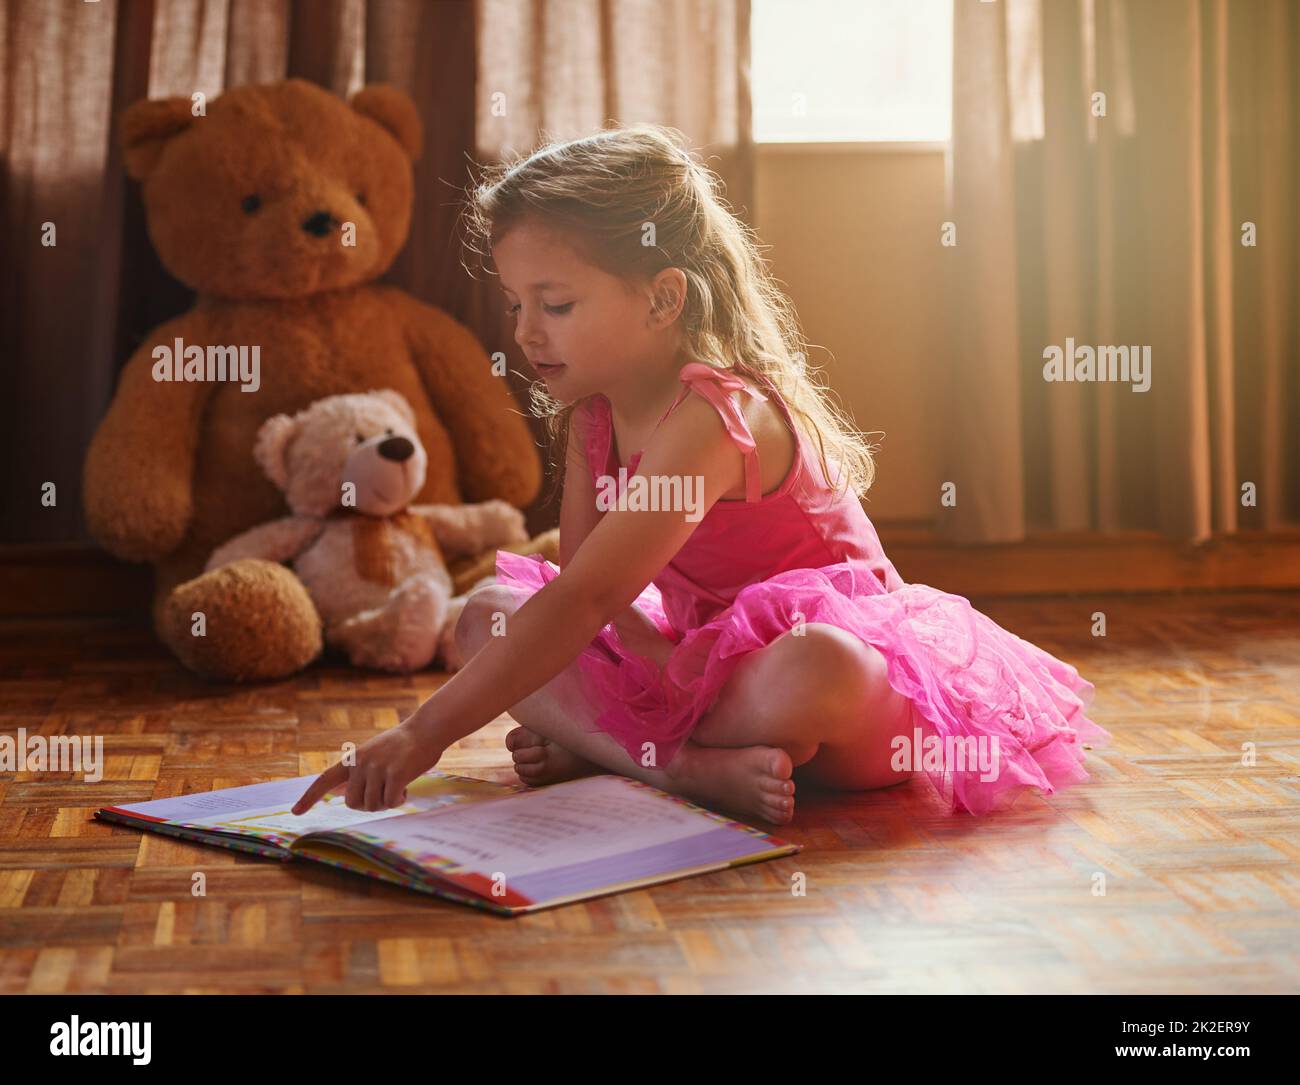 Imparare a leggere significa imparare a vedere. Scatto di una ragazza piccola che legge un libro di storia. Foto Stock